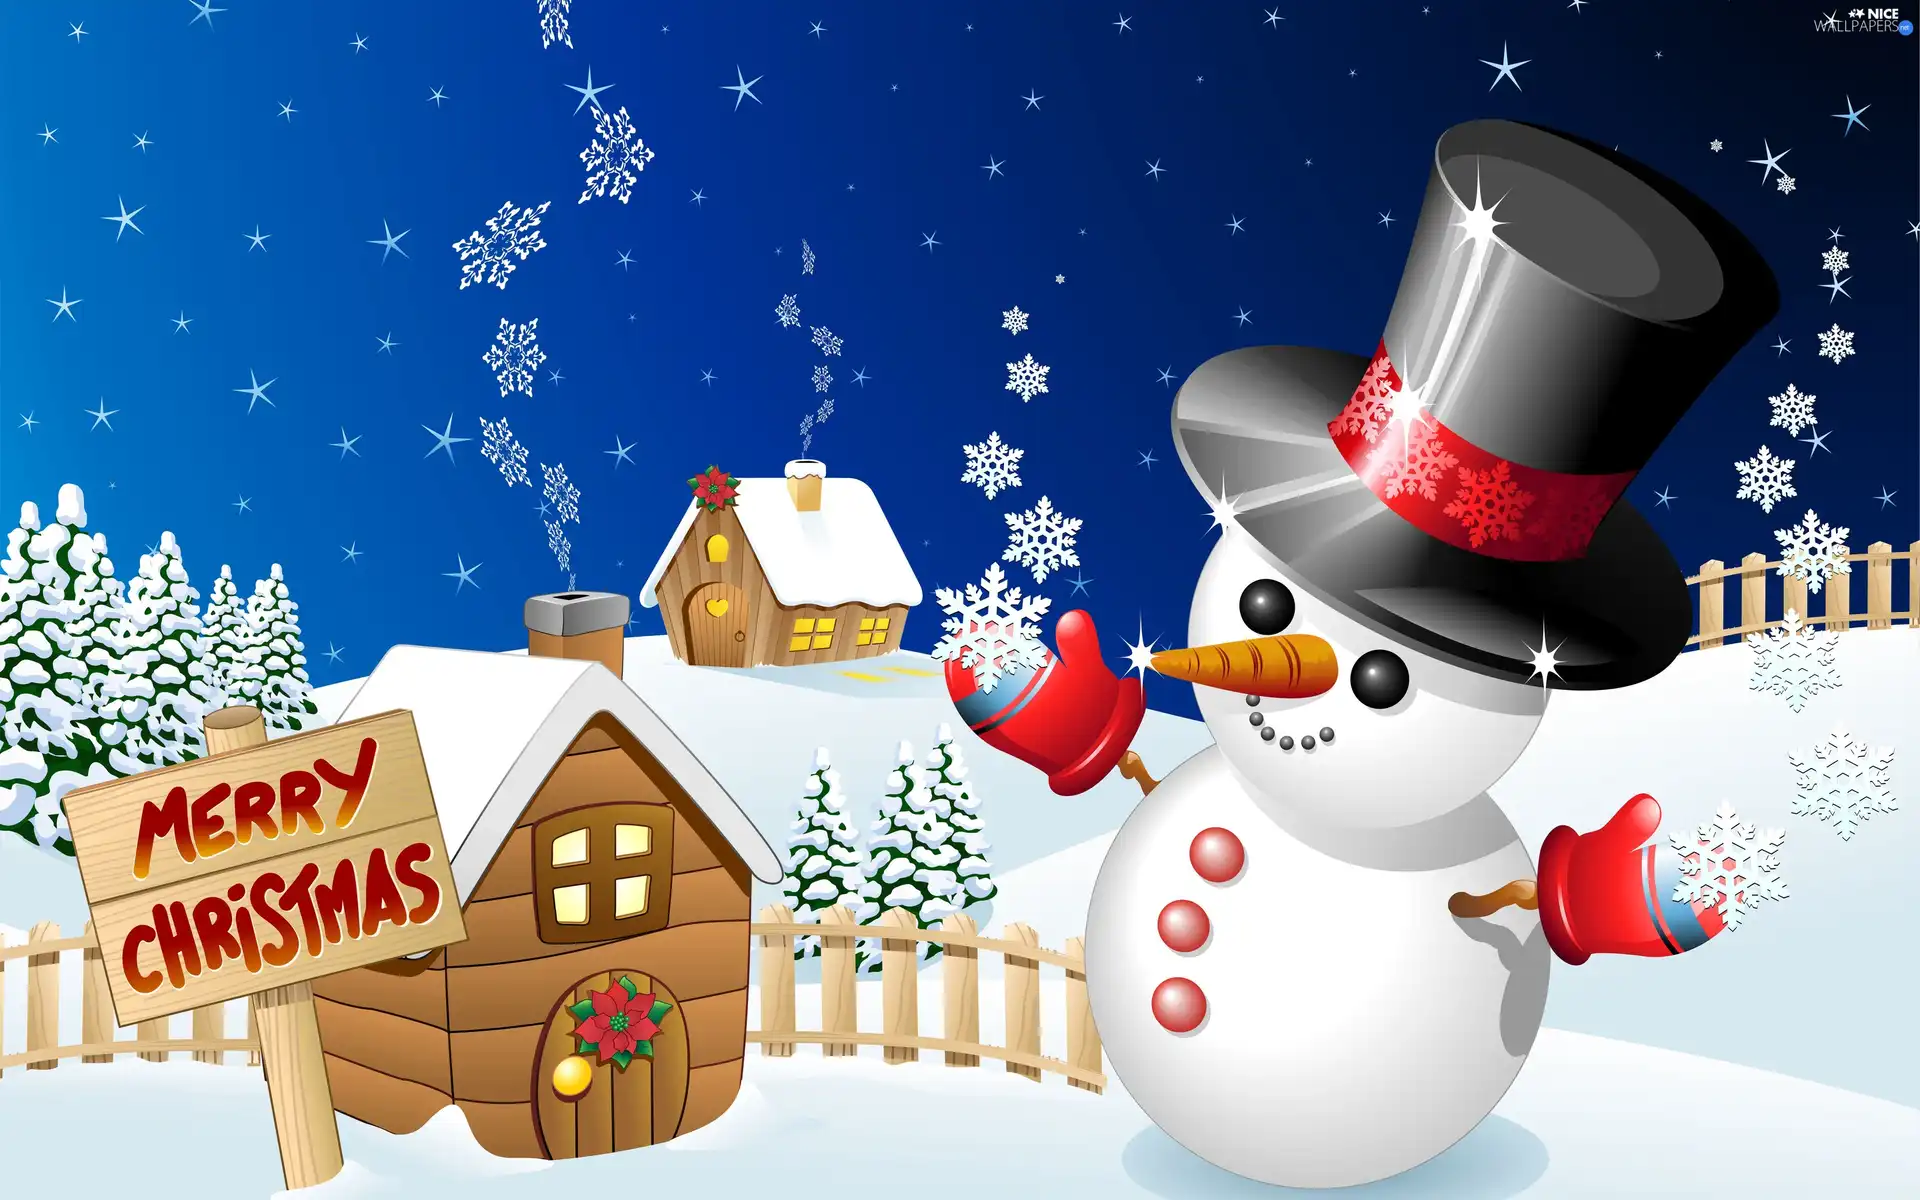 Snowman, Houses, christmas, snow